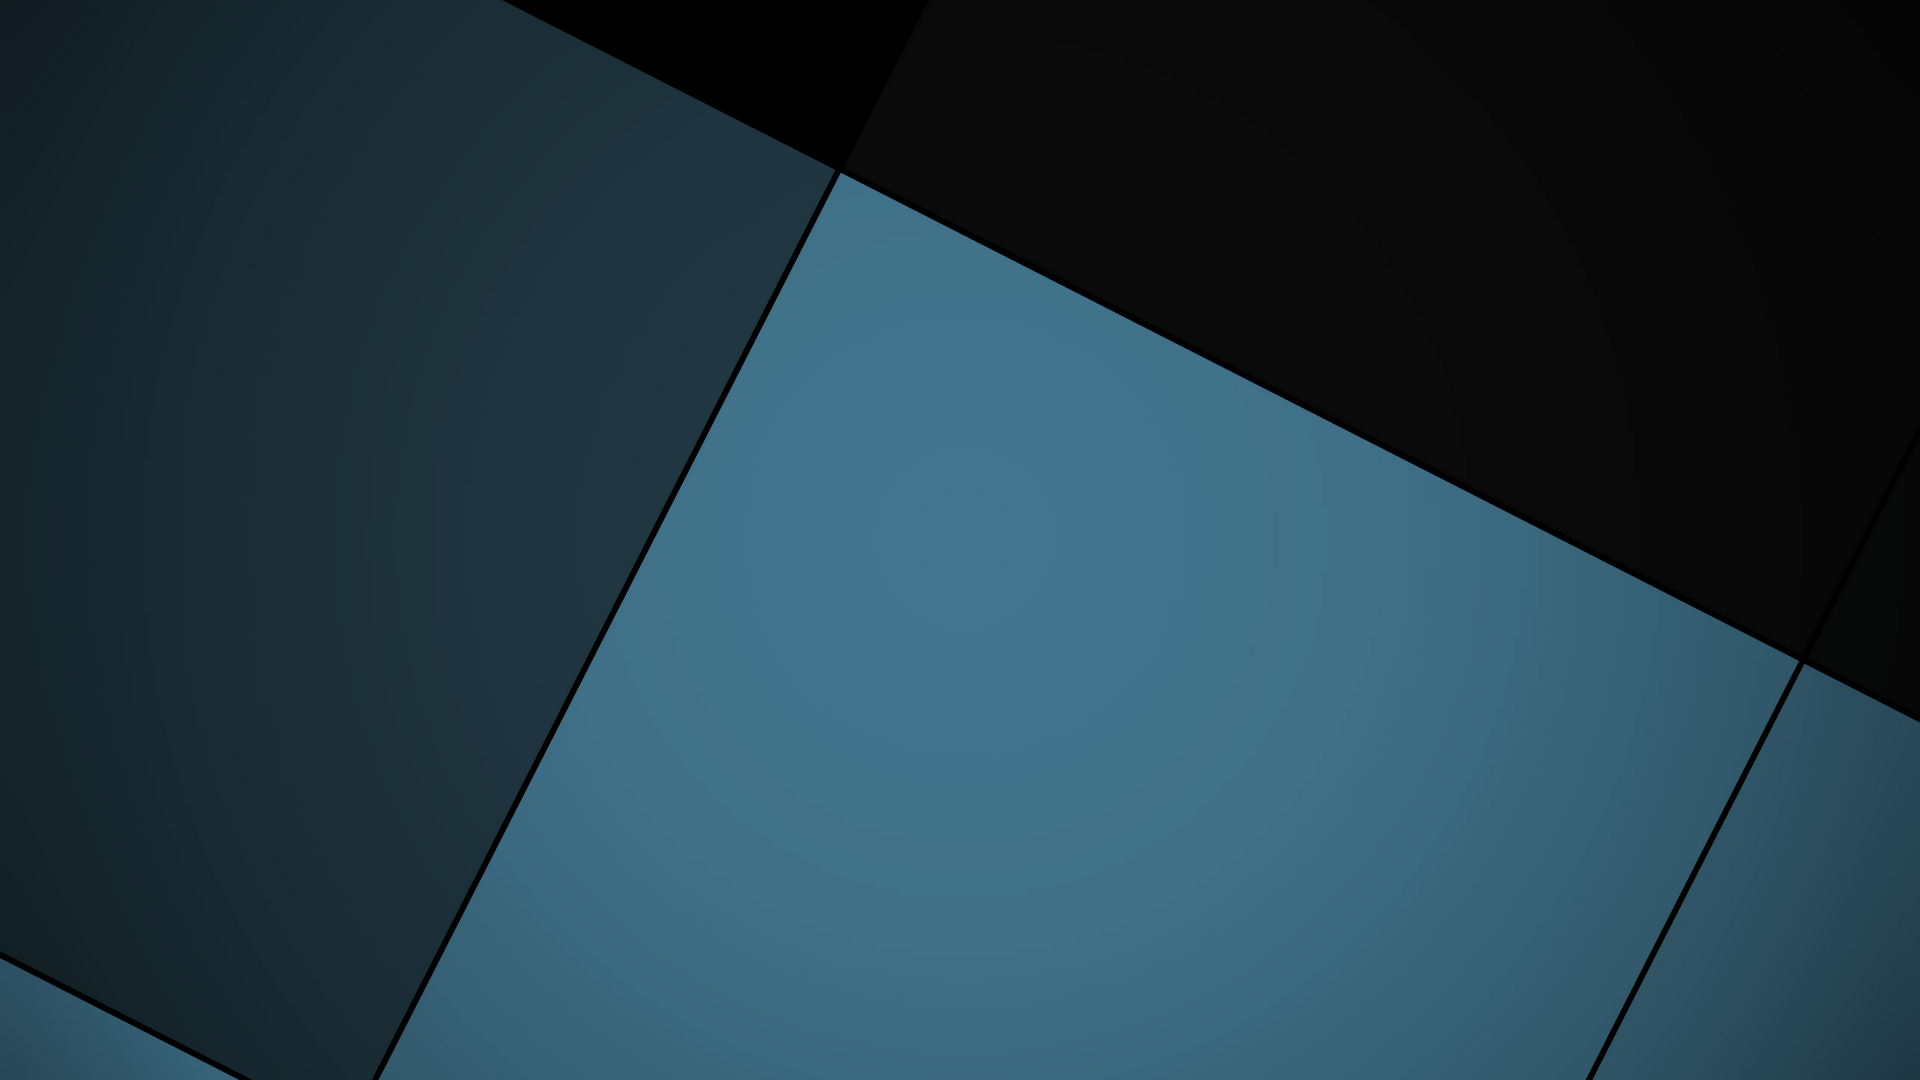 material design tapeten desktop,blau,türkis,linie,die architektur,himmel